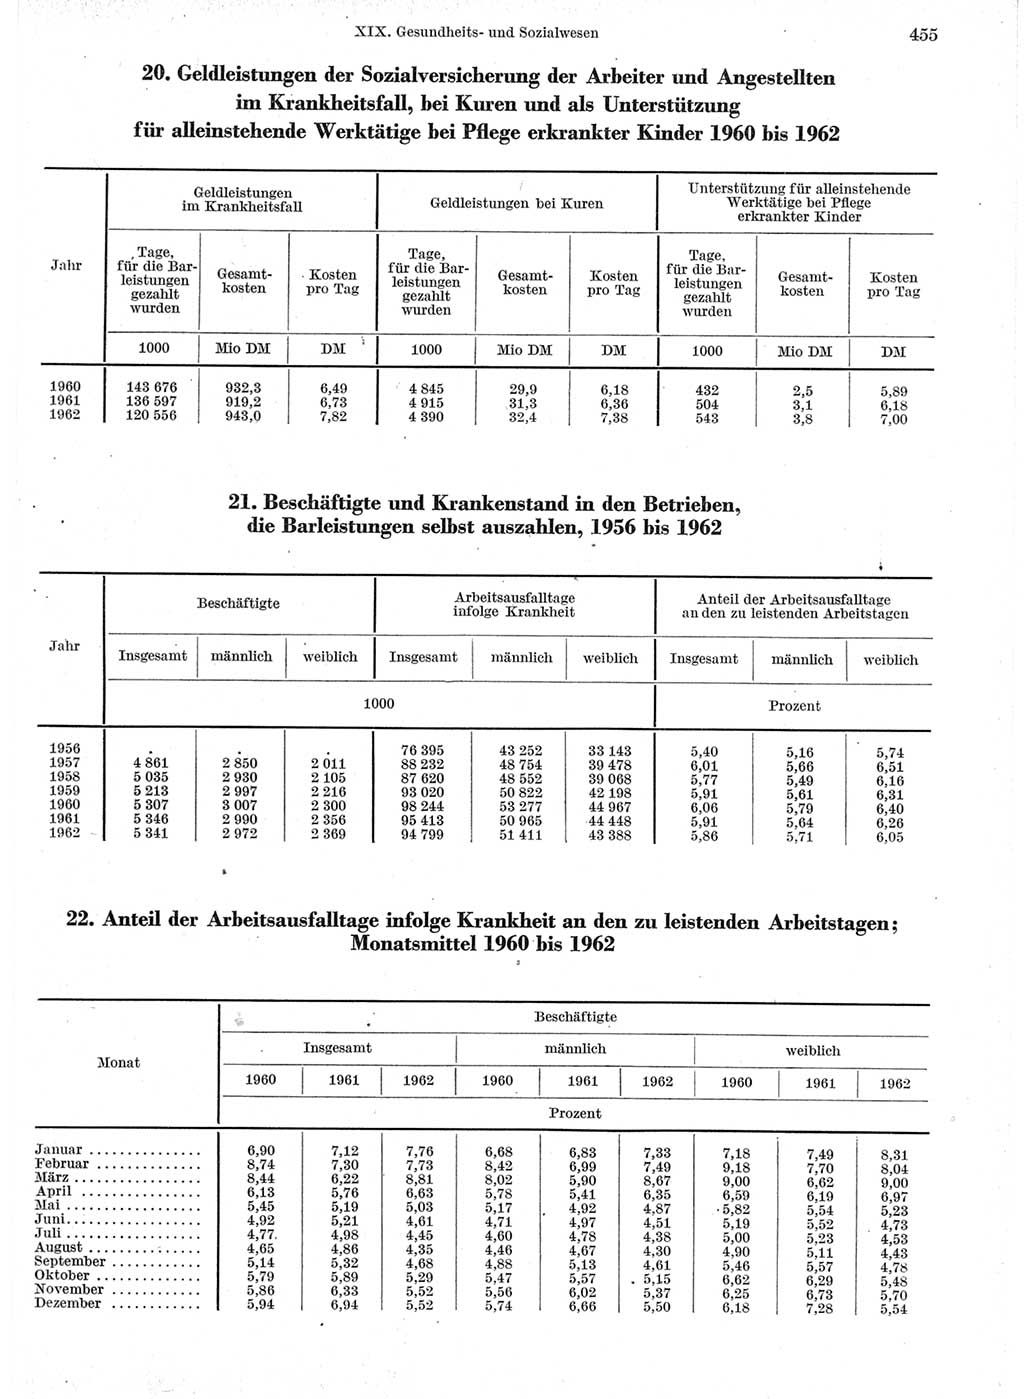 Statistisches Jahrbuch der Deutschen Demokratischen Republik (DDR) 1963, Seite 455 (Stat. Jb. DDR 1963, S. 455)